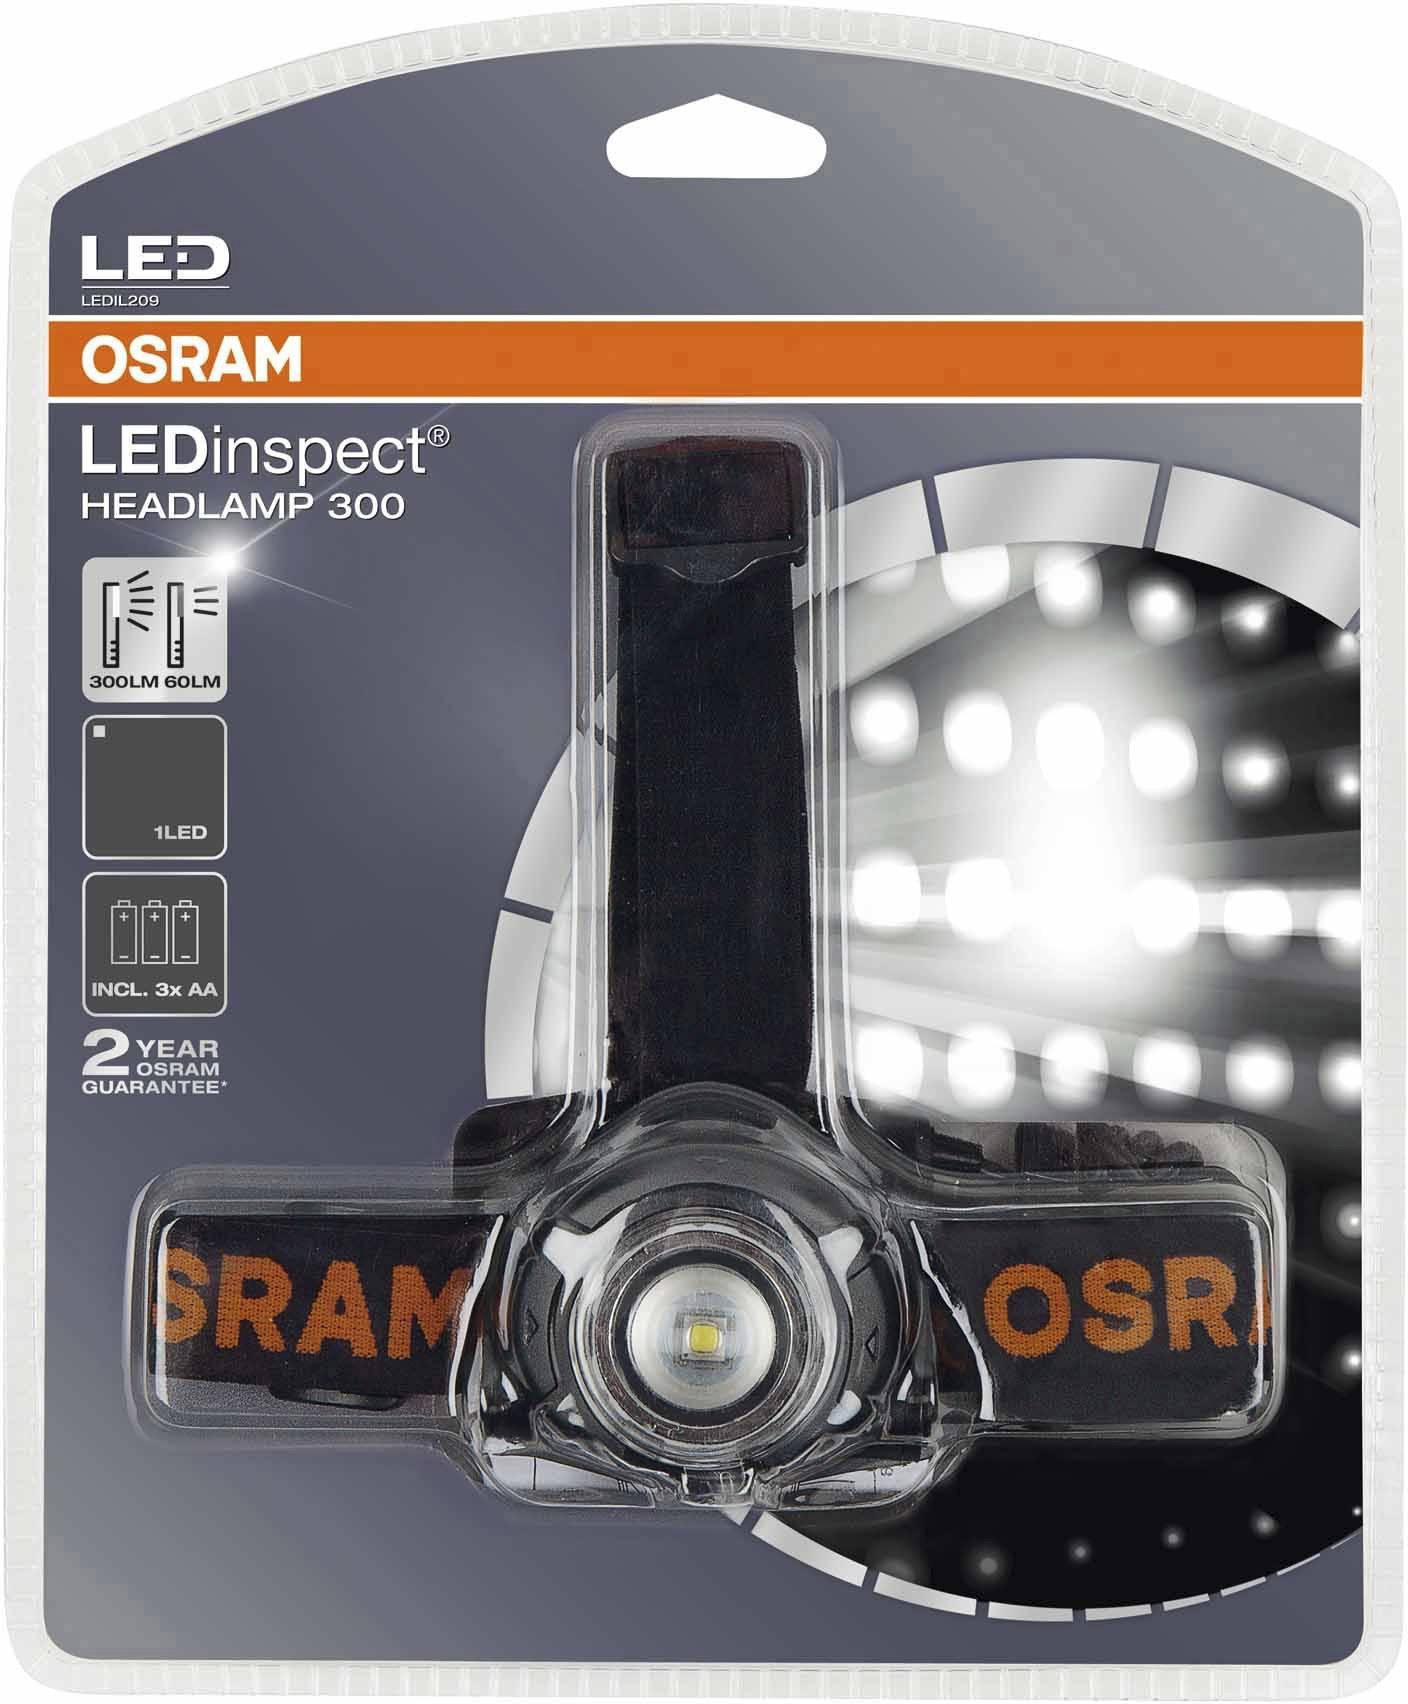 OSRAM Handleuchte LEDinspect HEADLAMP 300 LEDIL209 LED 